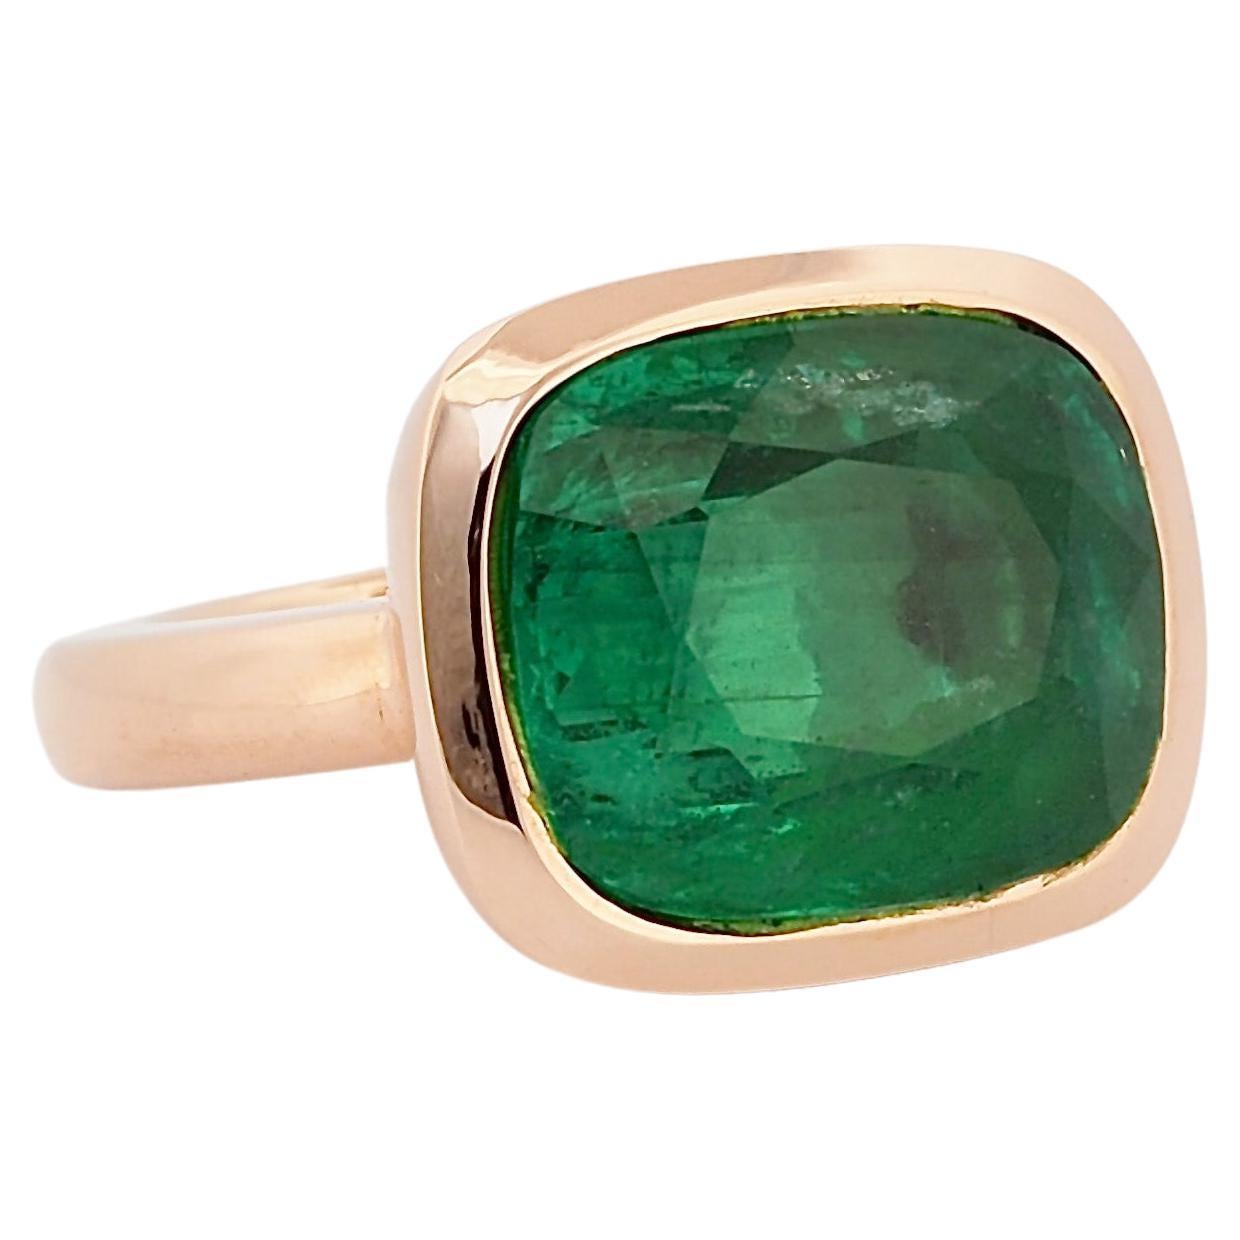 Atemberaubender Smaragdring, Smaragd aus Sambia 11,95 ct, mit SSEF Zertifikat Minor Oil.
Dieser einzigartige Stein ist in Roségold 750 gefasst.